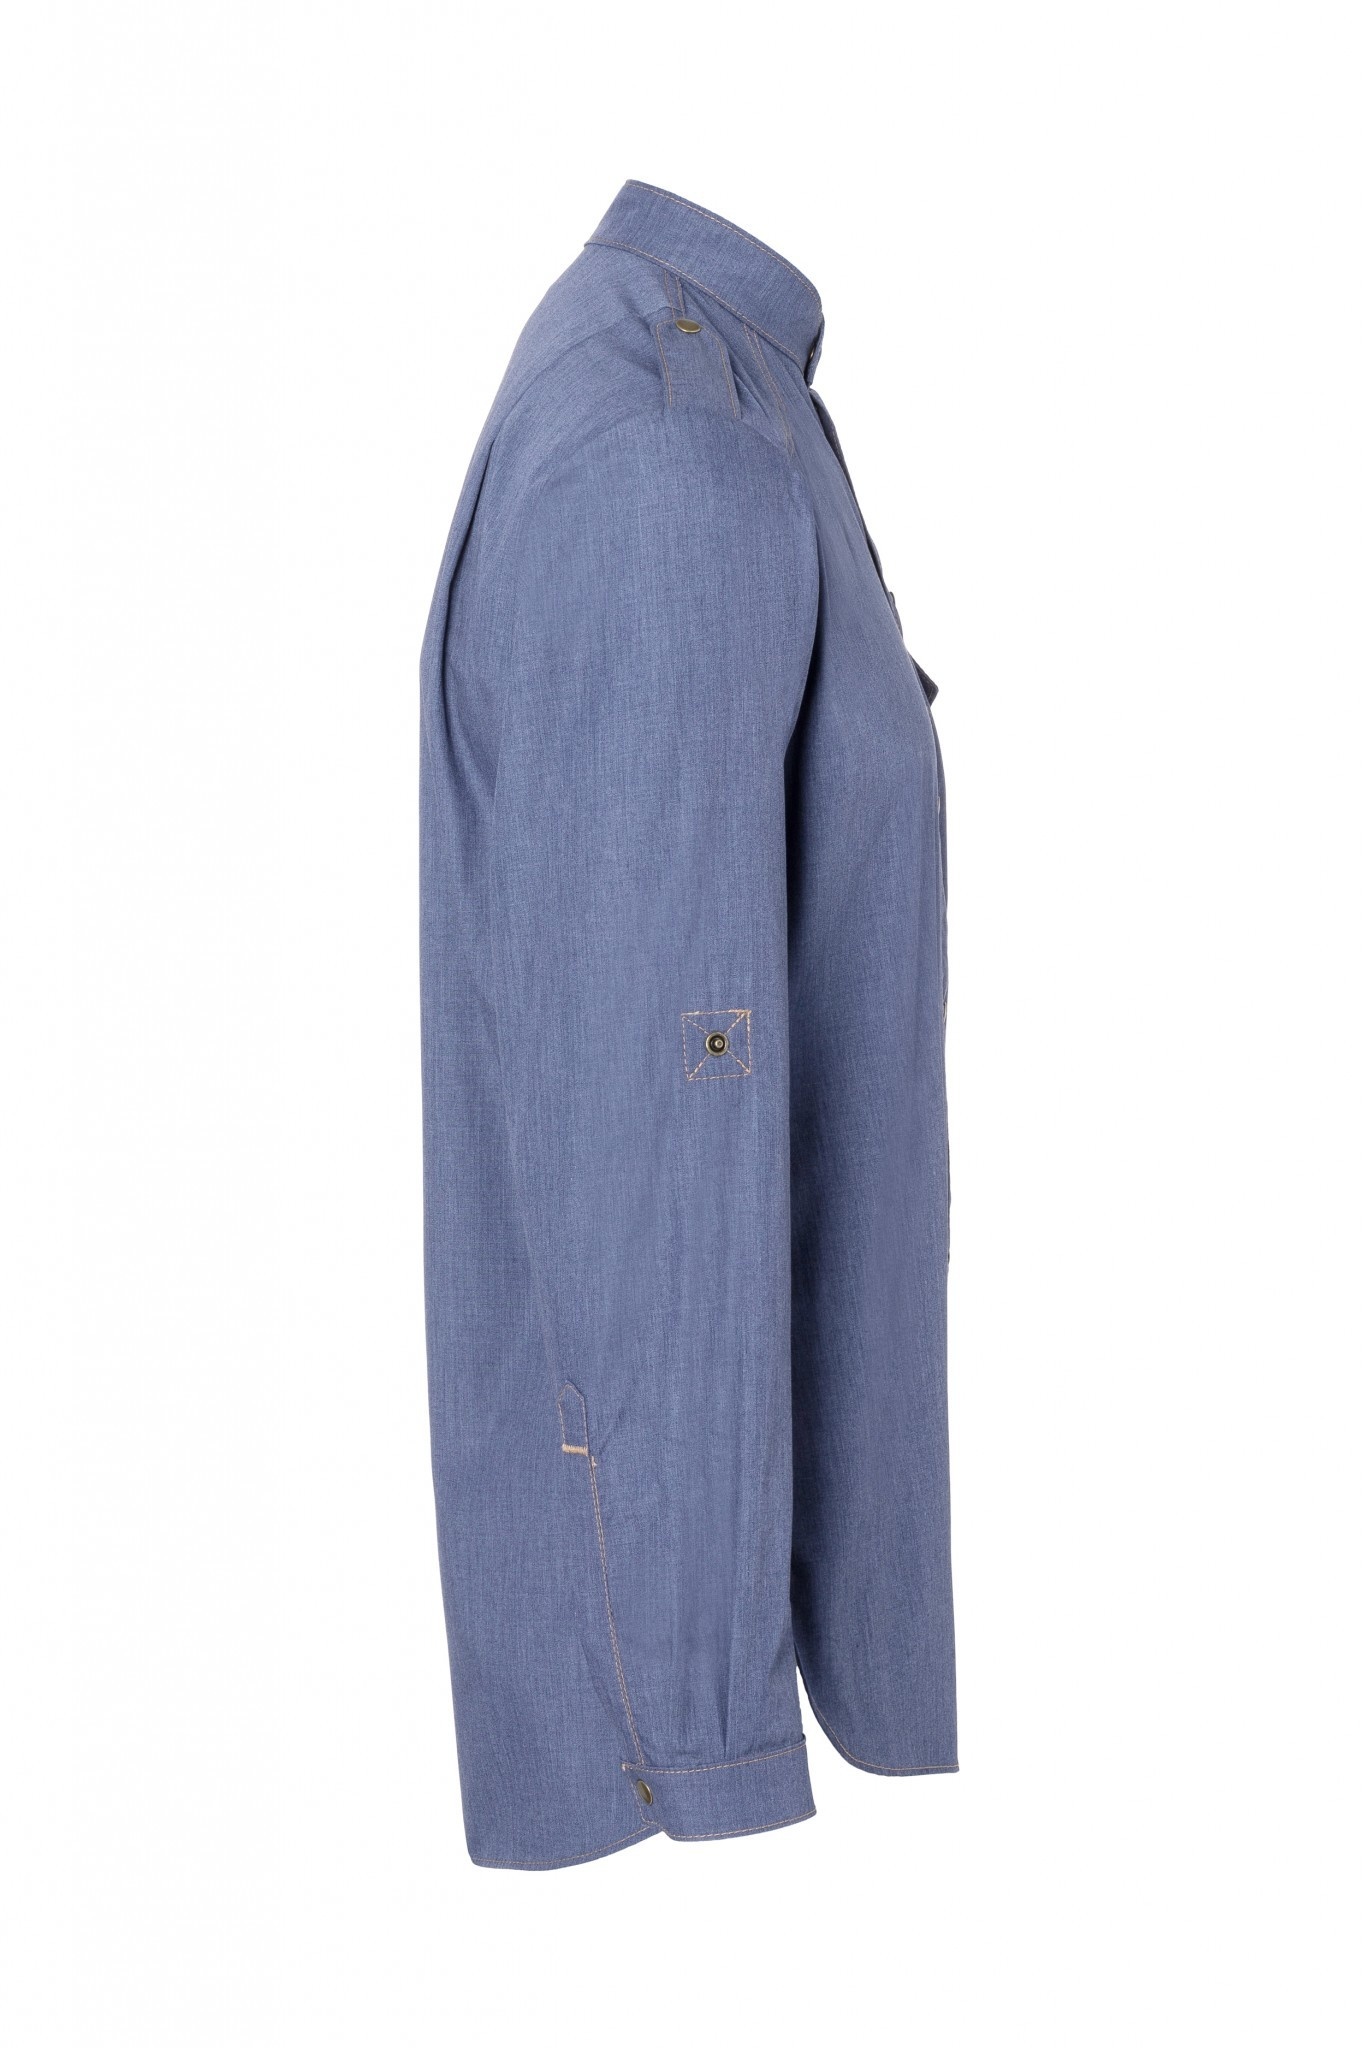 Kochhemd Jeans 1892 California | Vintage Blue | 65% Polyester / 35% Baumwolle | Erhältlich in 10 Größen